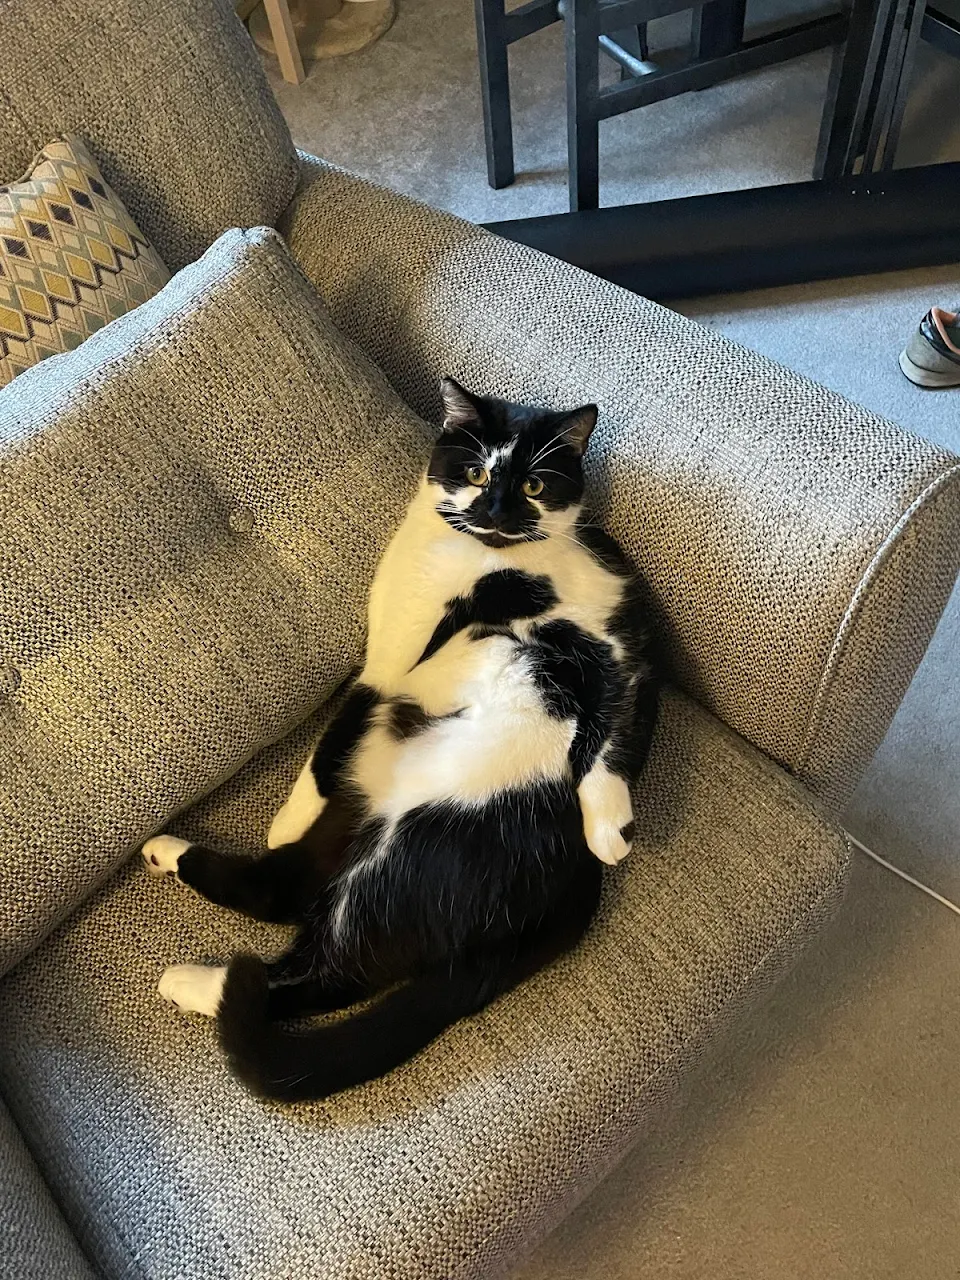 Cat relaxing on an armchair